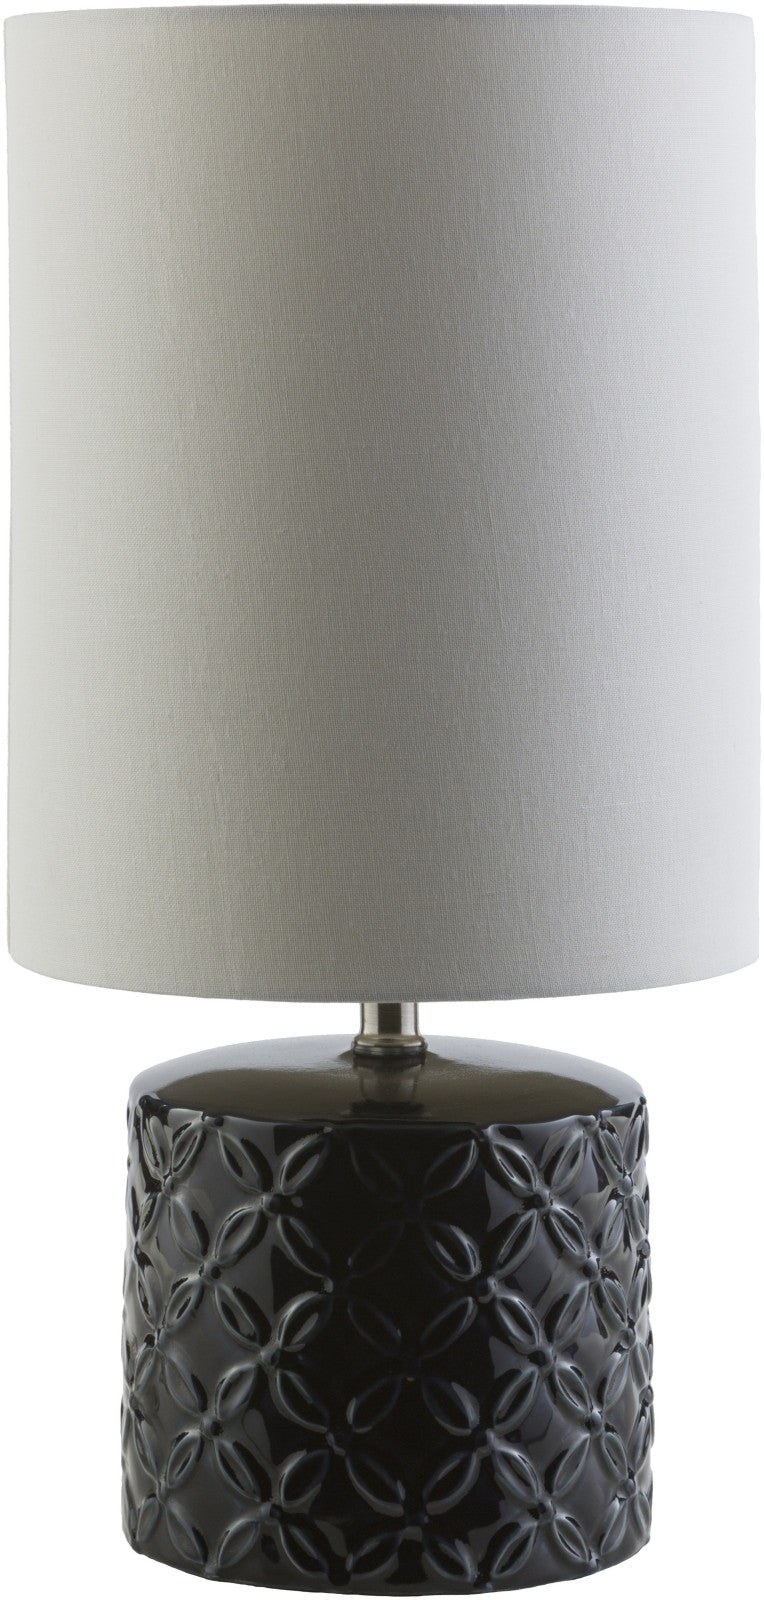 Surya Whitsett WHT-371 White Lamp Table Lamp